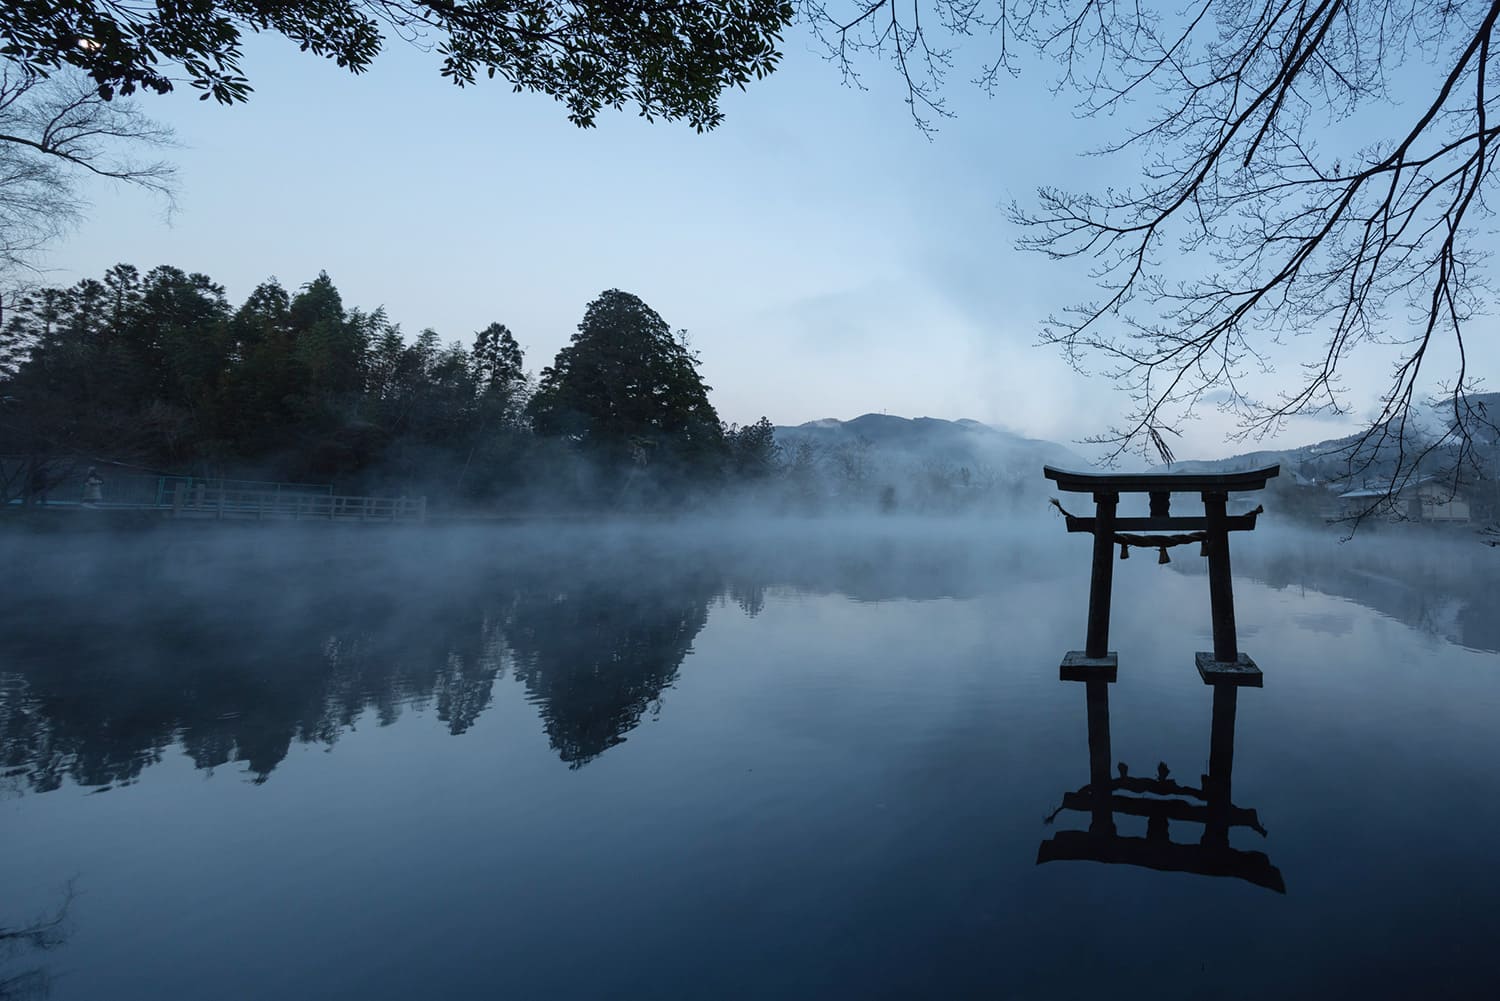 「天祖神社」側から見た湖の様子。神社の脇からは由布山系の湧水が出ており、清らかな空気に包まれている